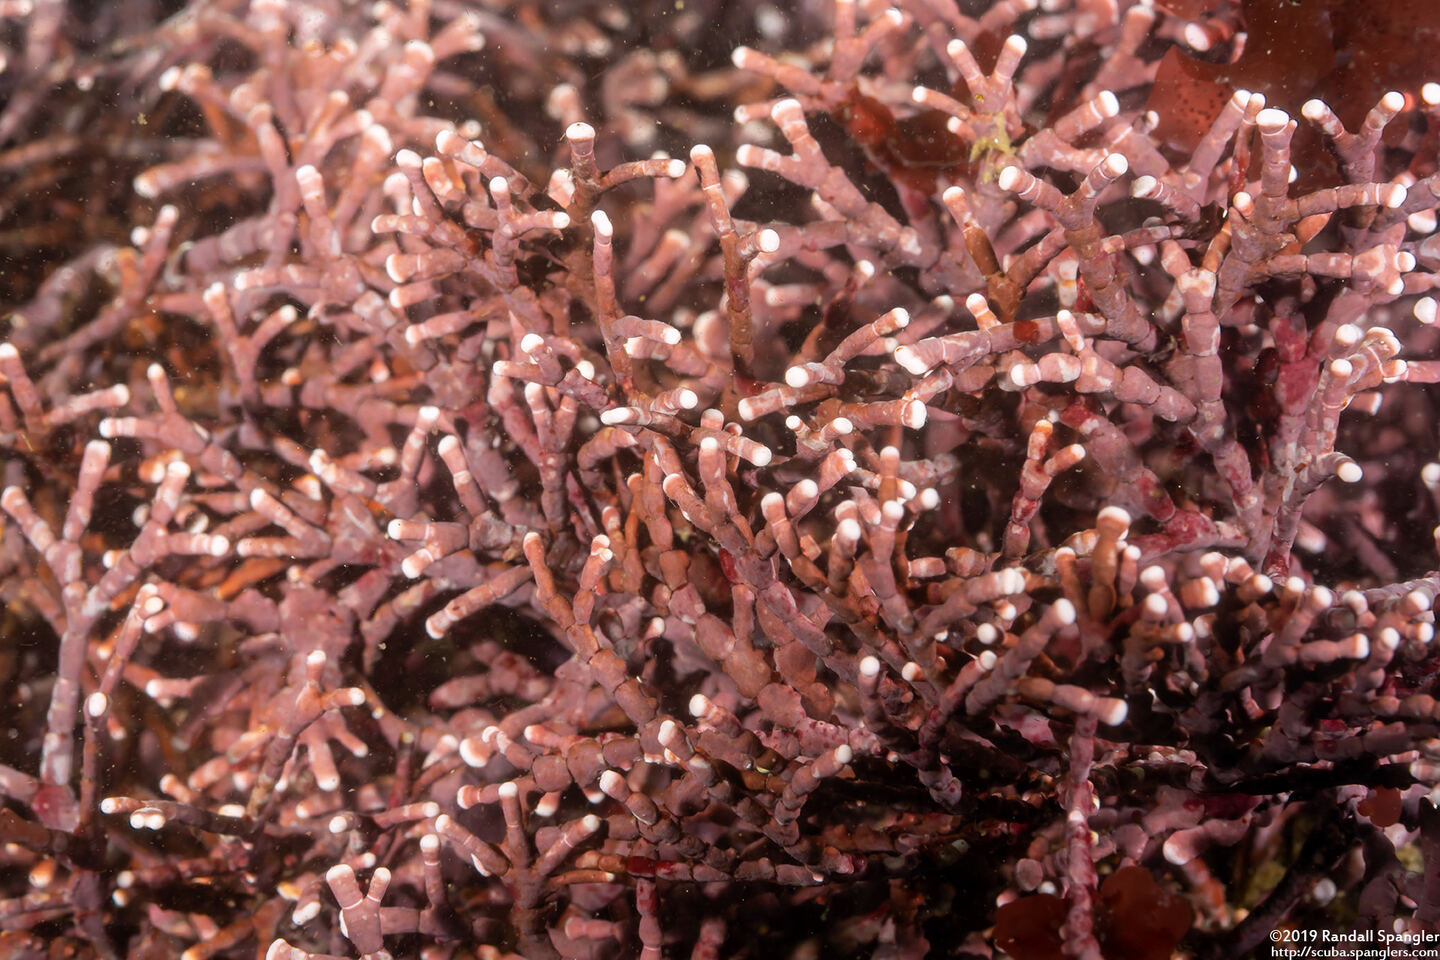 Calliarthron sp.1 (Articulated Coralline Algae)